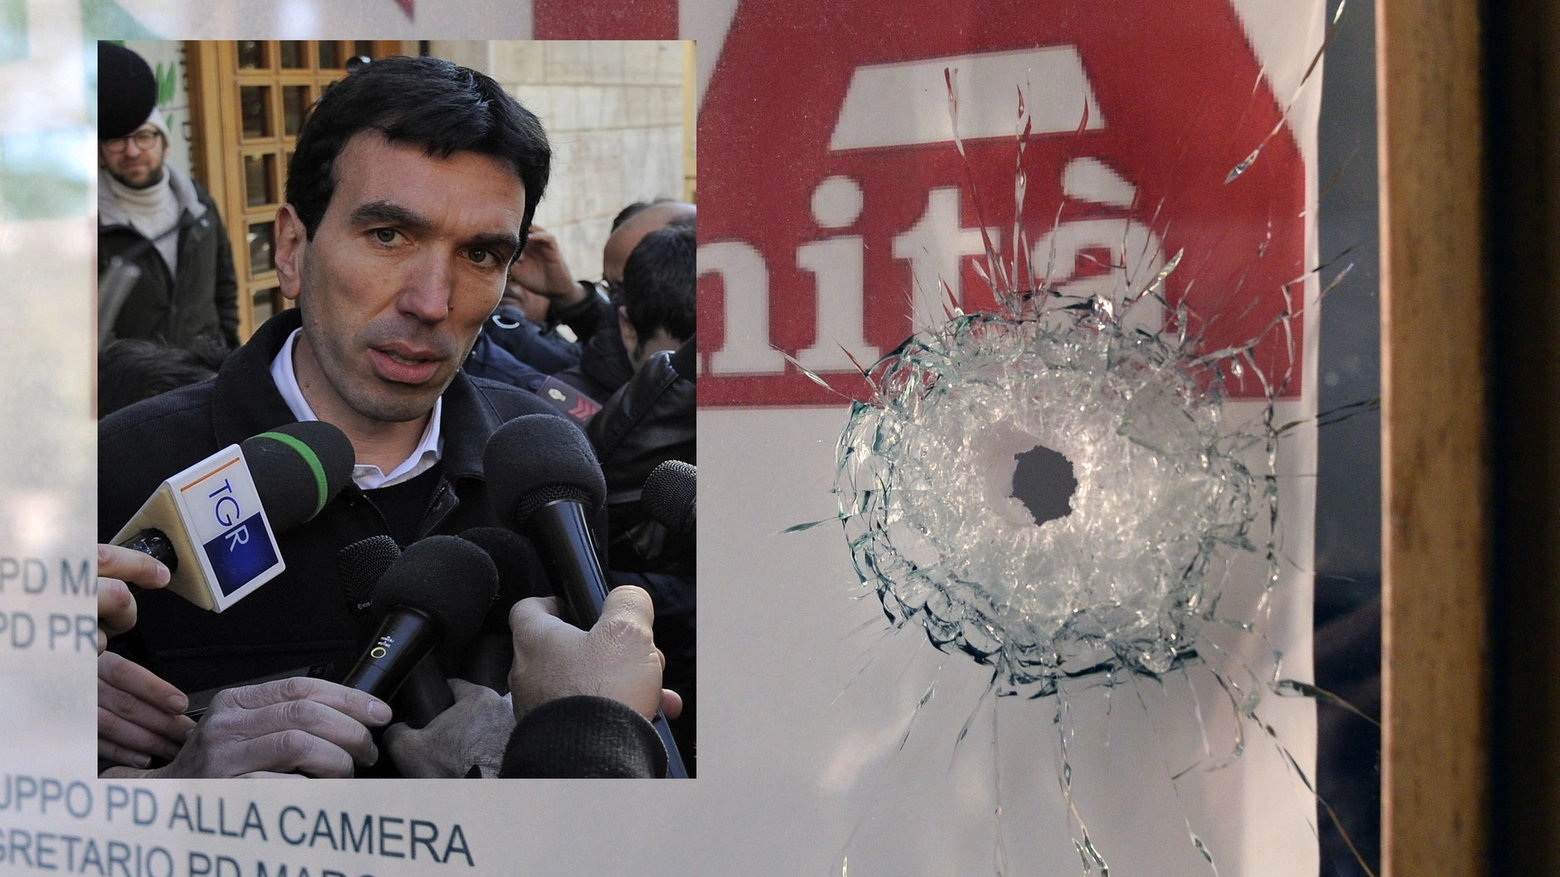 Il ministro Maurizio Martina e la sede Pd colpita dal proiettile (foto Calavita)